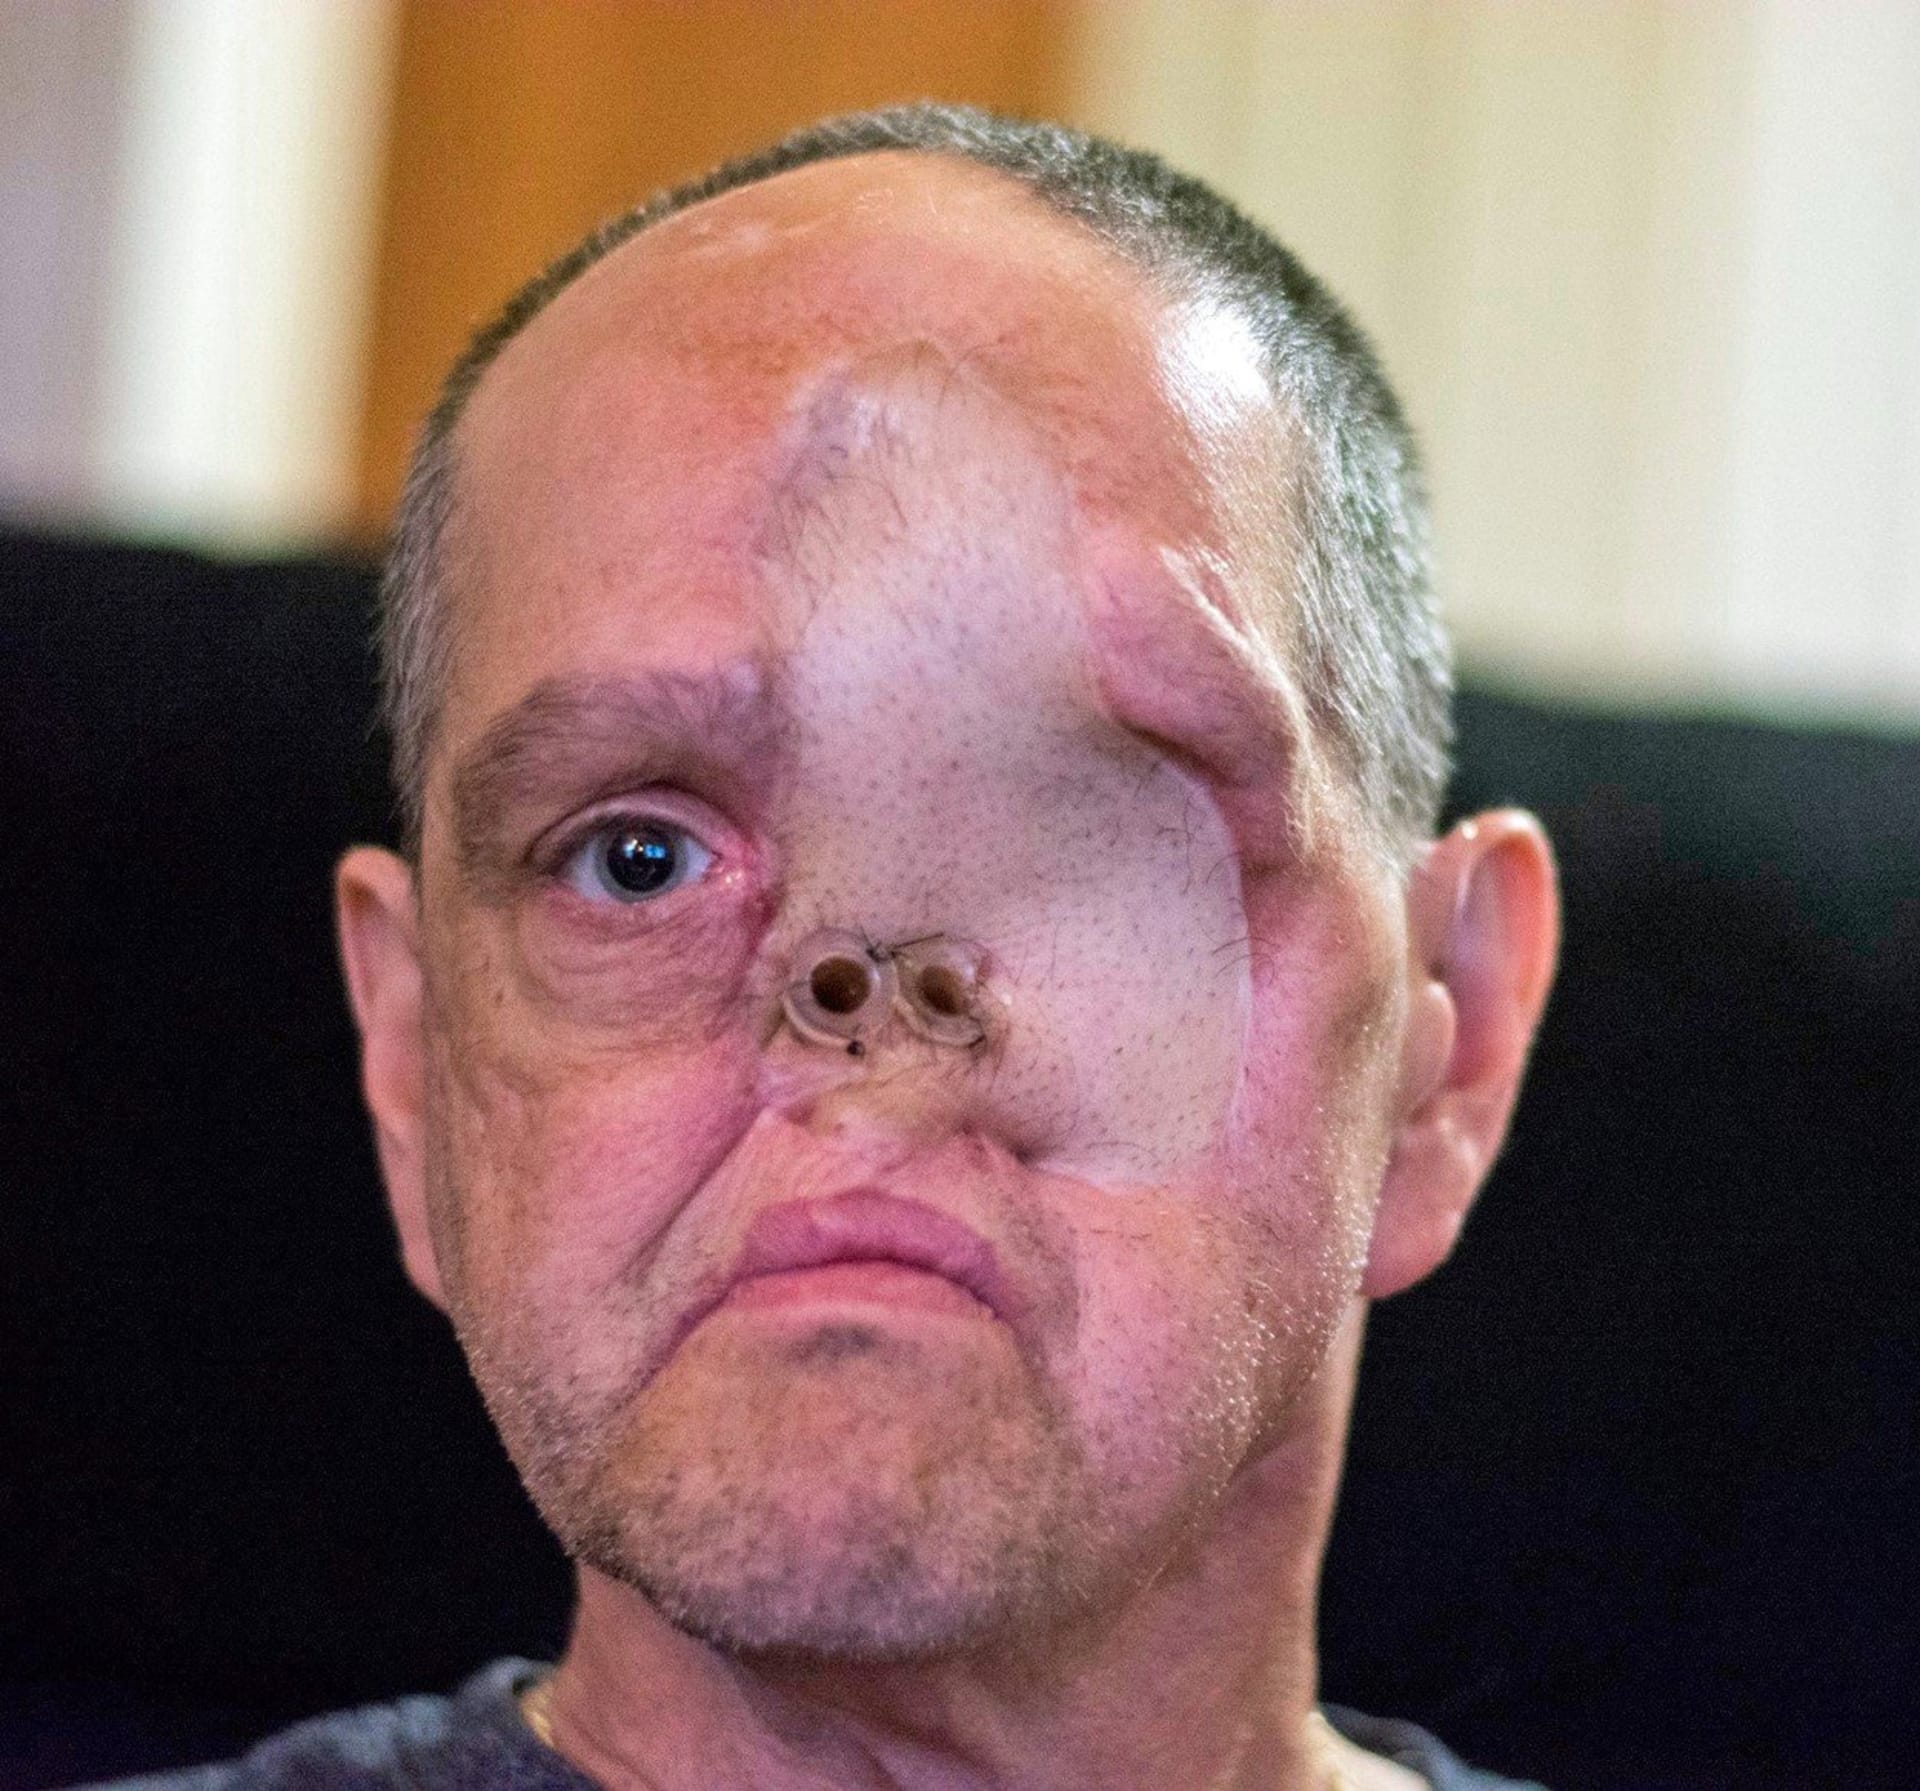 Drsné fotky - rakovina muži vzala oko, nos, i levou tvář 6